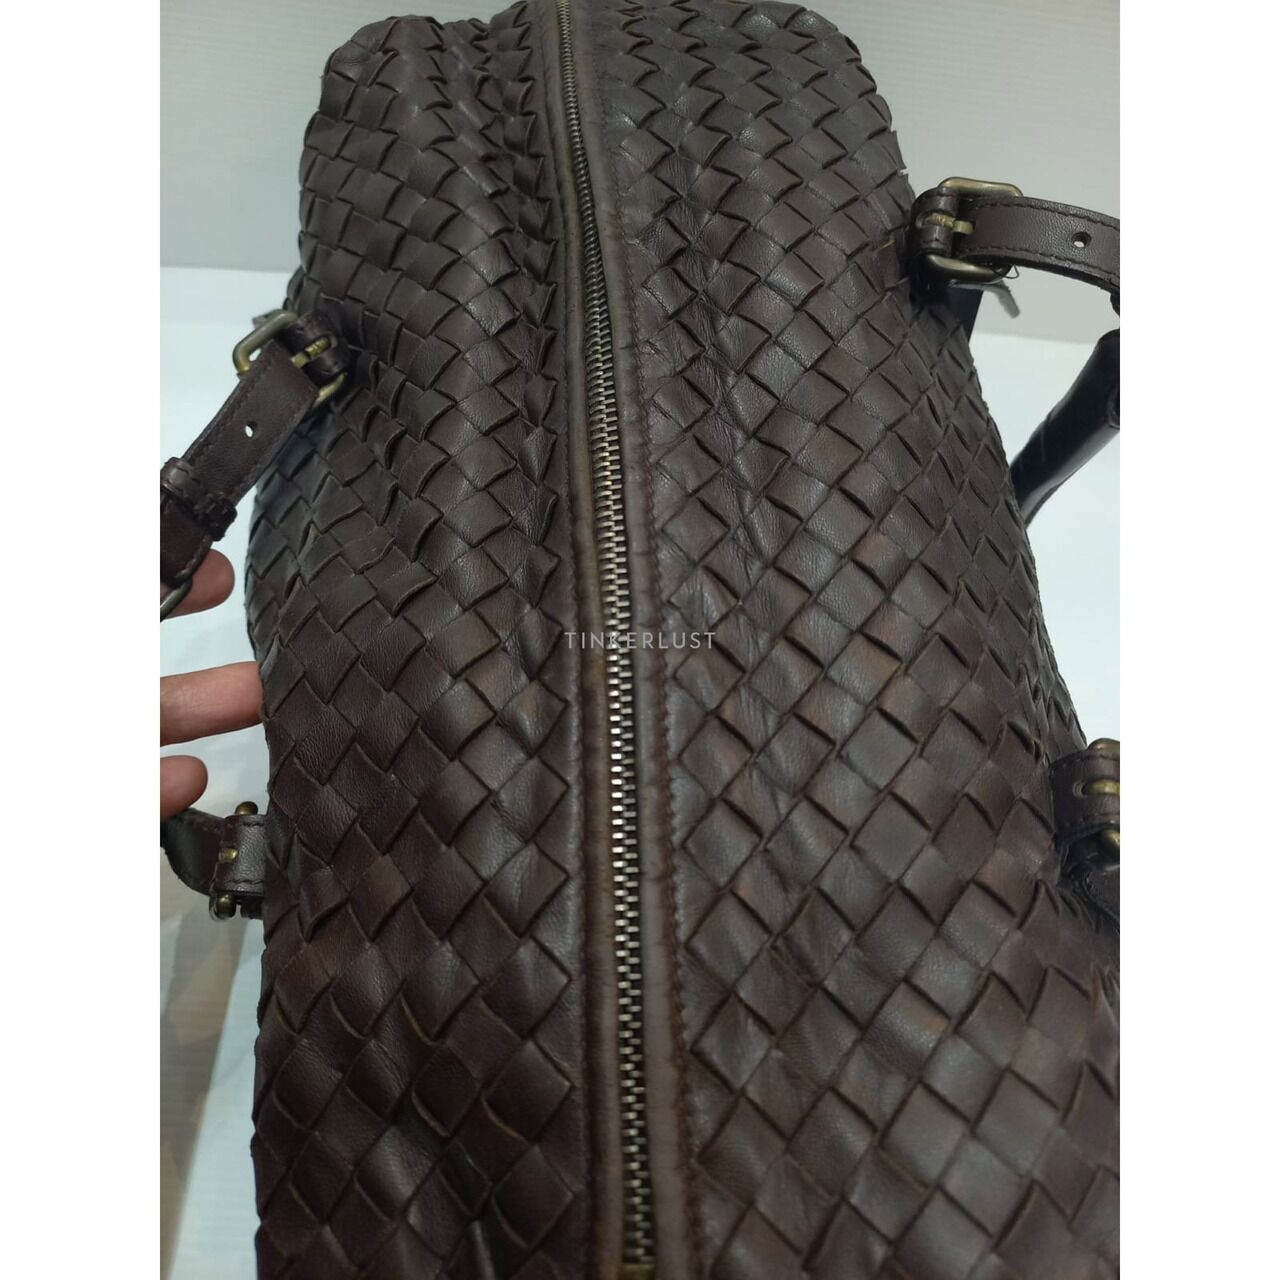 Bottega Veneta Intrecciato Leather Brown Handbag